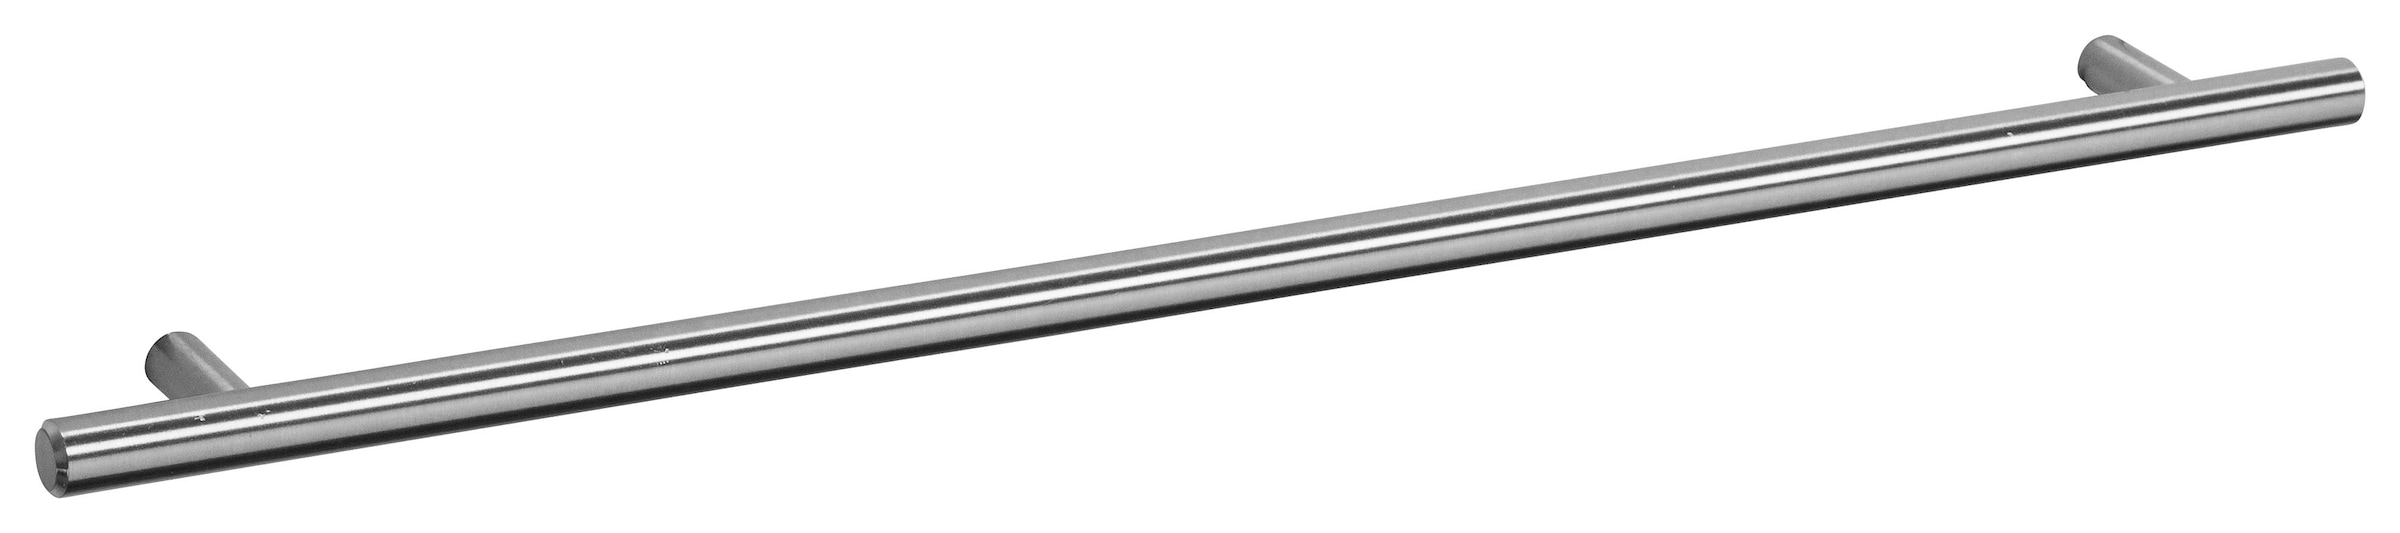 ♕ OPTIFIT Hängeschrank »Bern«, Breite 100 cm, 70 cm hoch, 2 Türen, mit  Metallgriffen versandkostenfrei auf